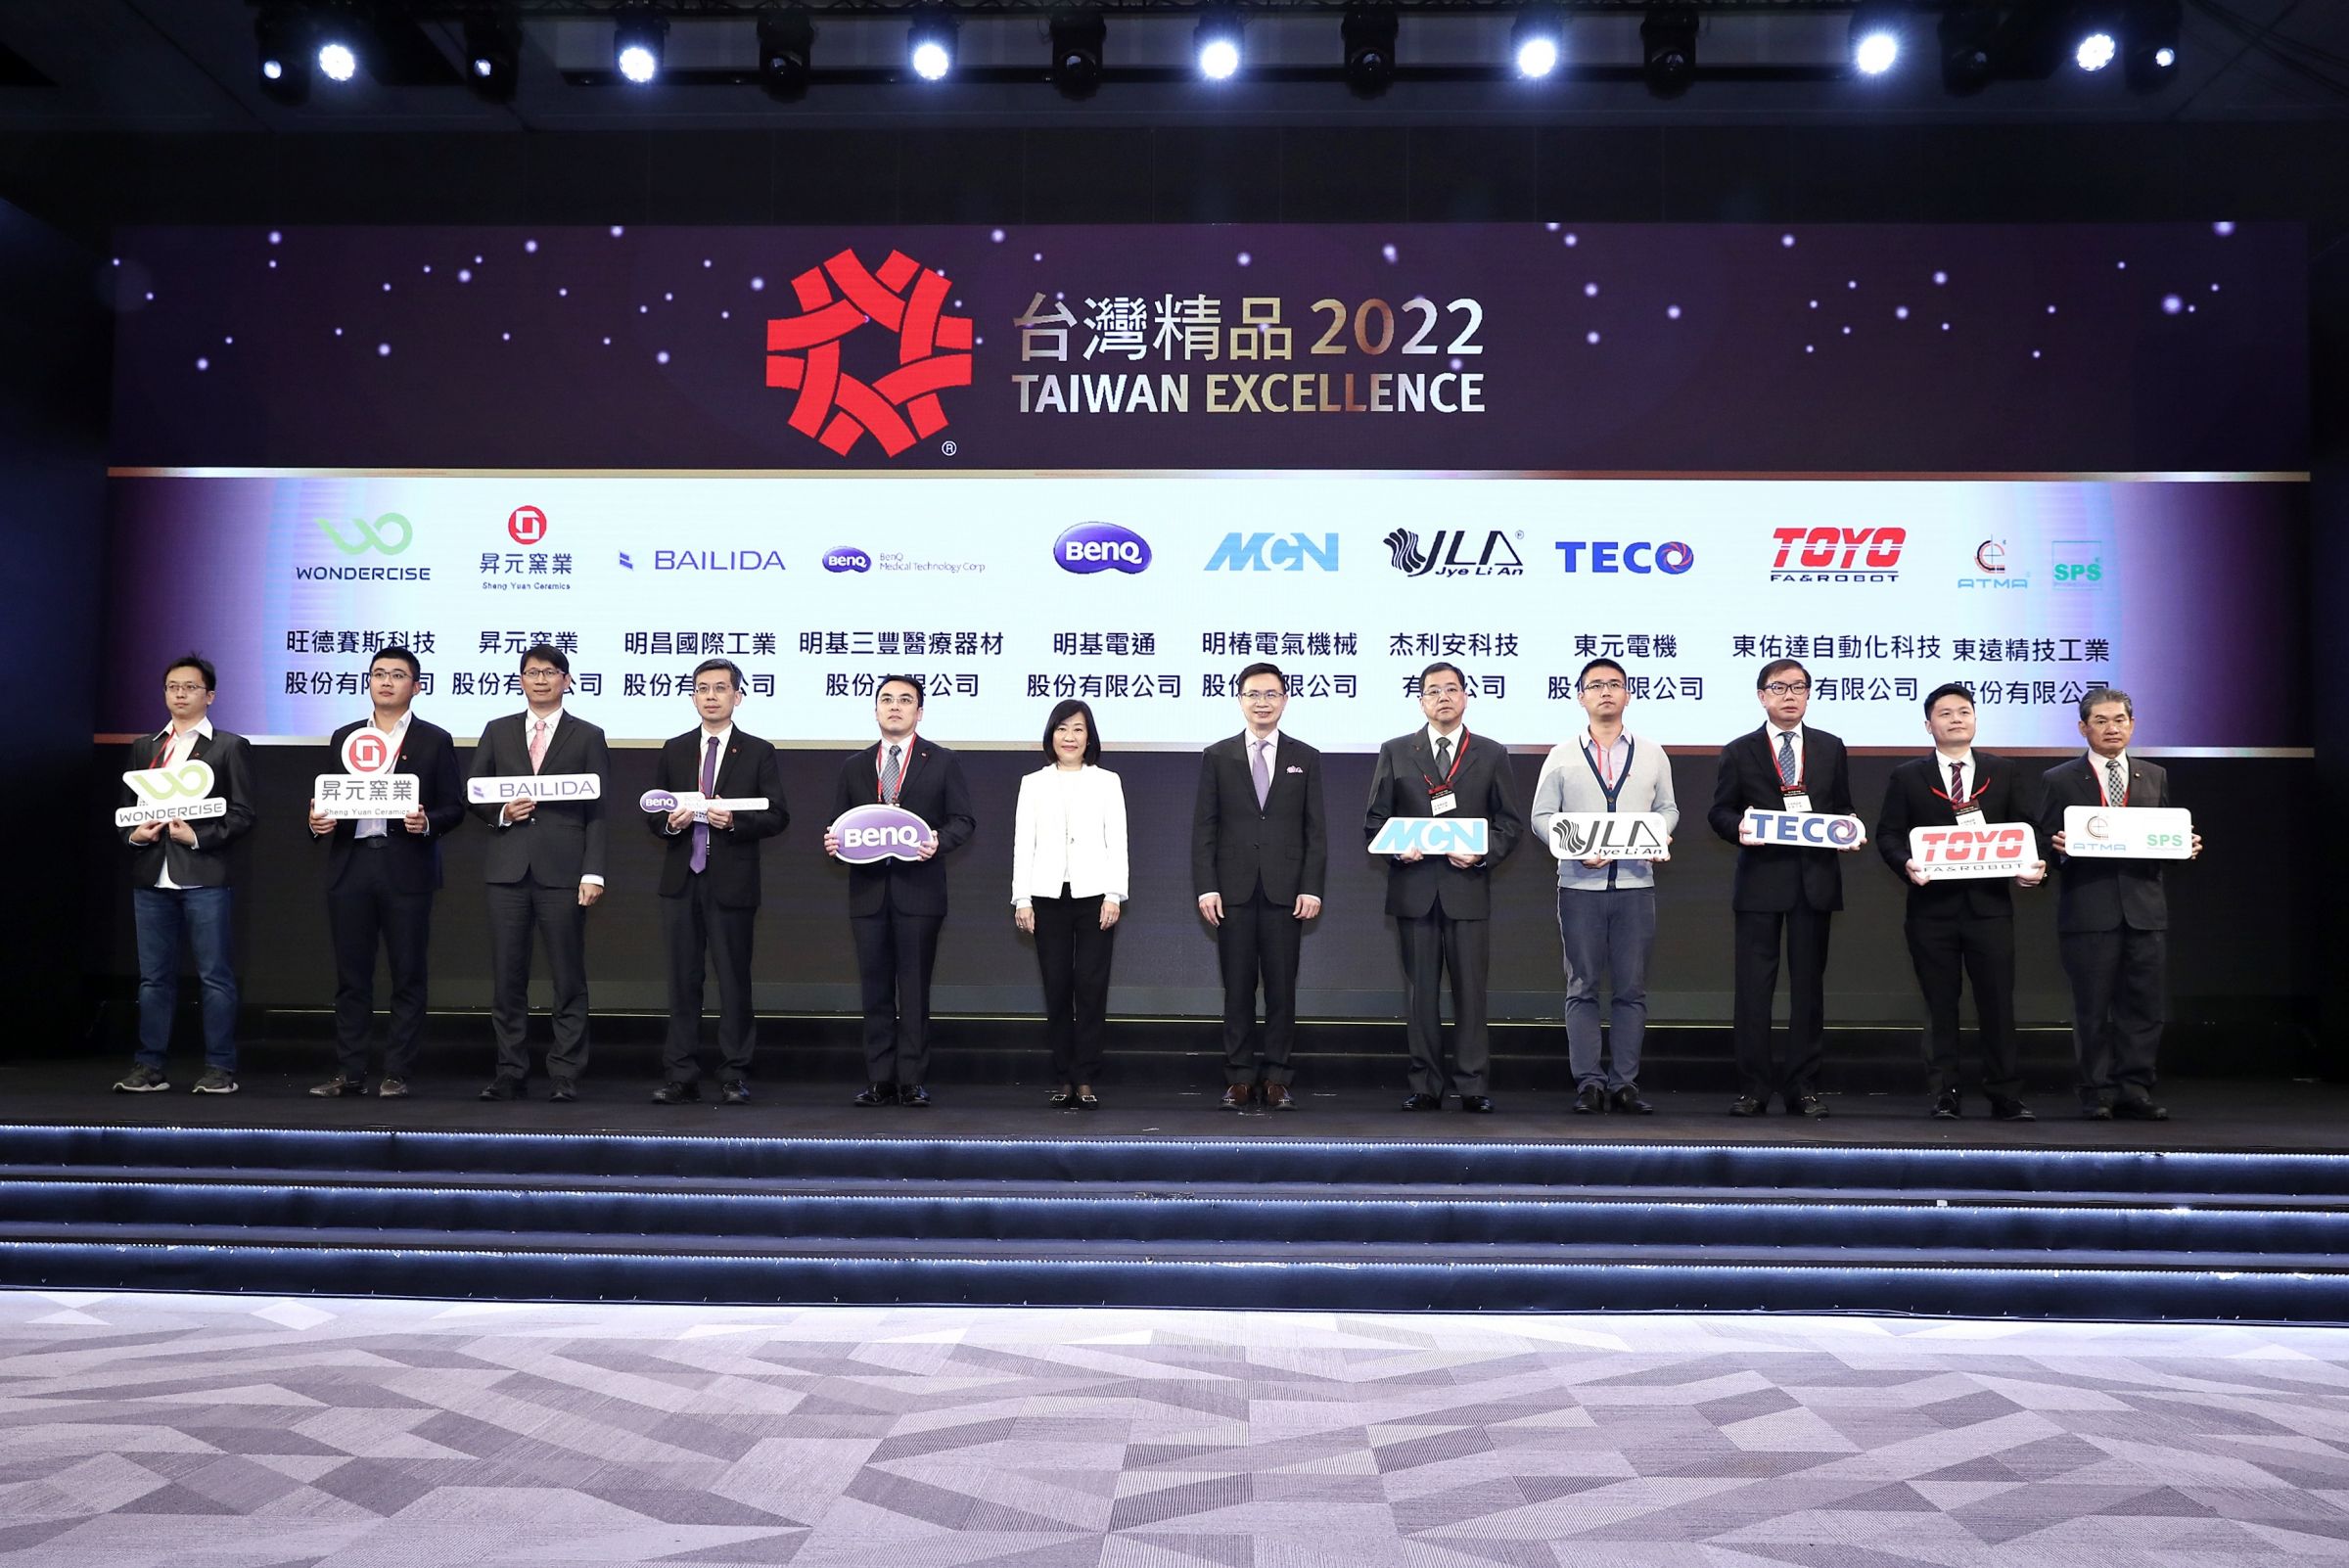 2021年11月24日《颁奖典礼》，陈东钦董事长(右一)接受颁奖，实至名归，与经营理念之价值『坚持最高品质承诺』不谋而合。